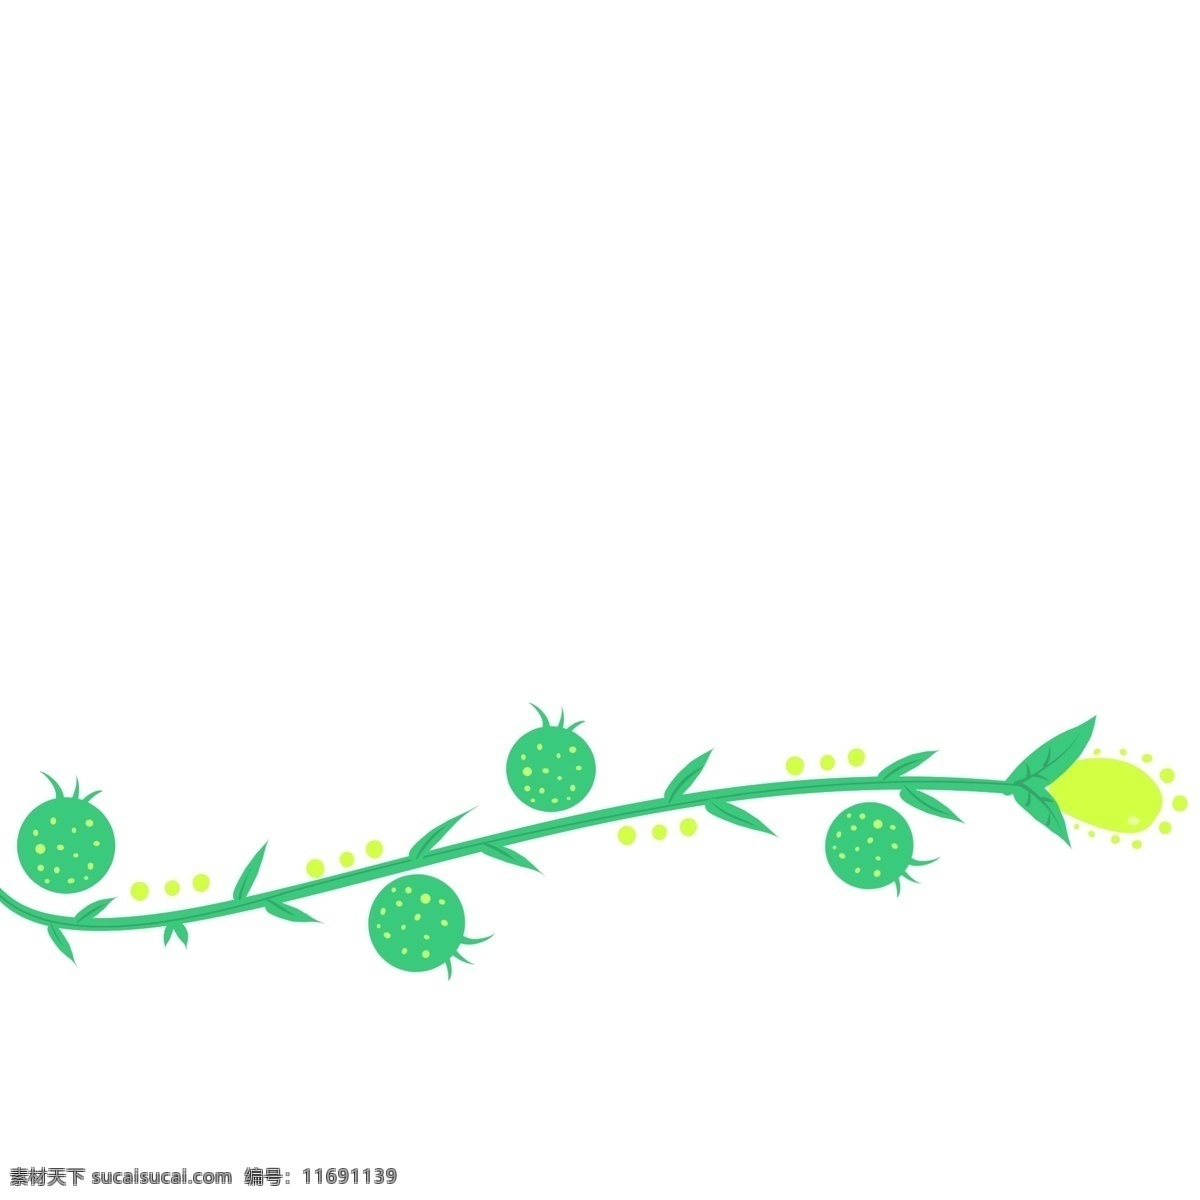 分割线 小草 卡通 插画 绿色的小草 卡通的插画 分割线插画 简易分割线 装饰插画 绿植 植物 叶子